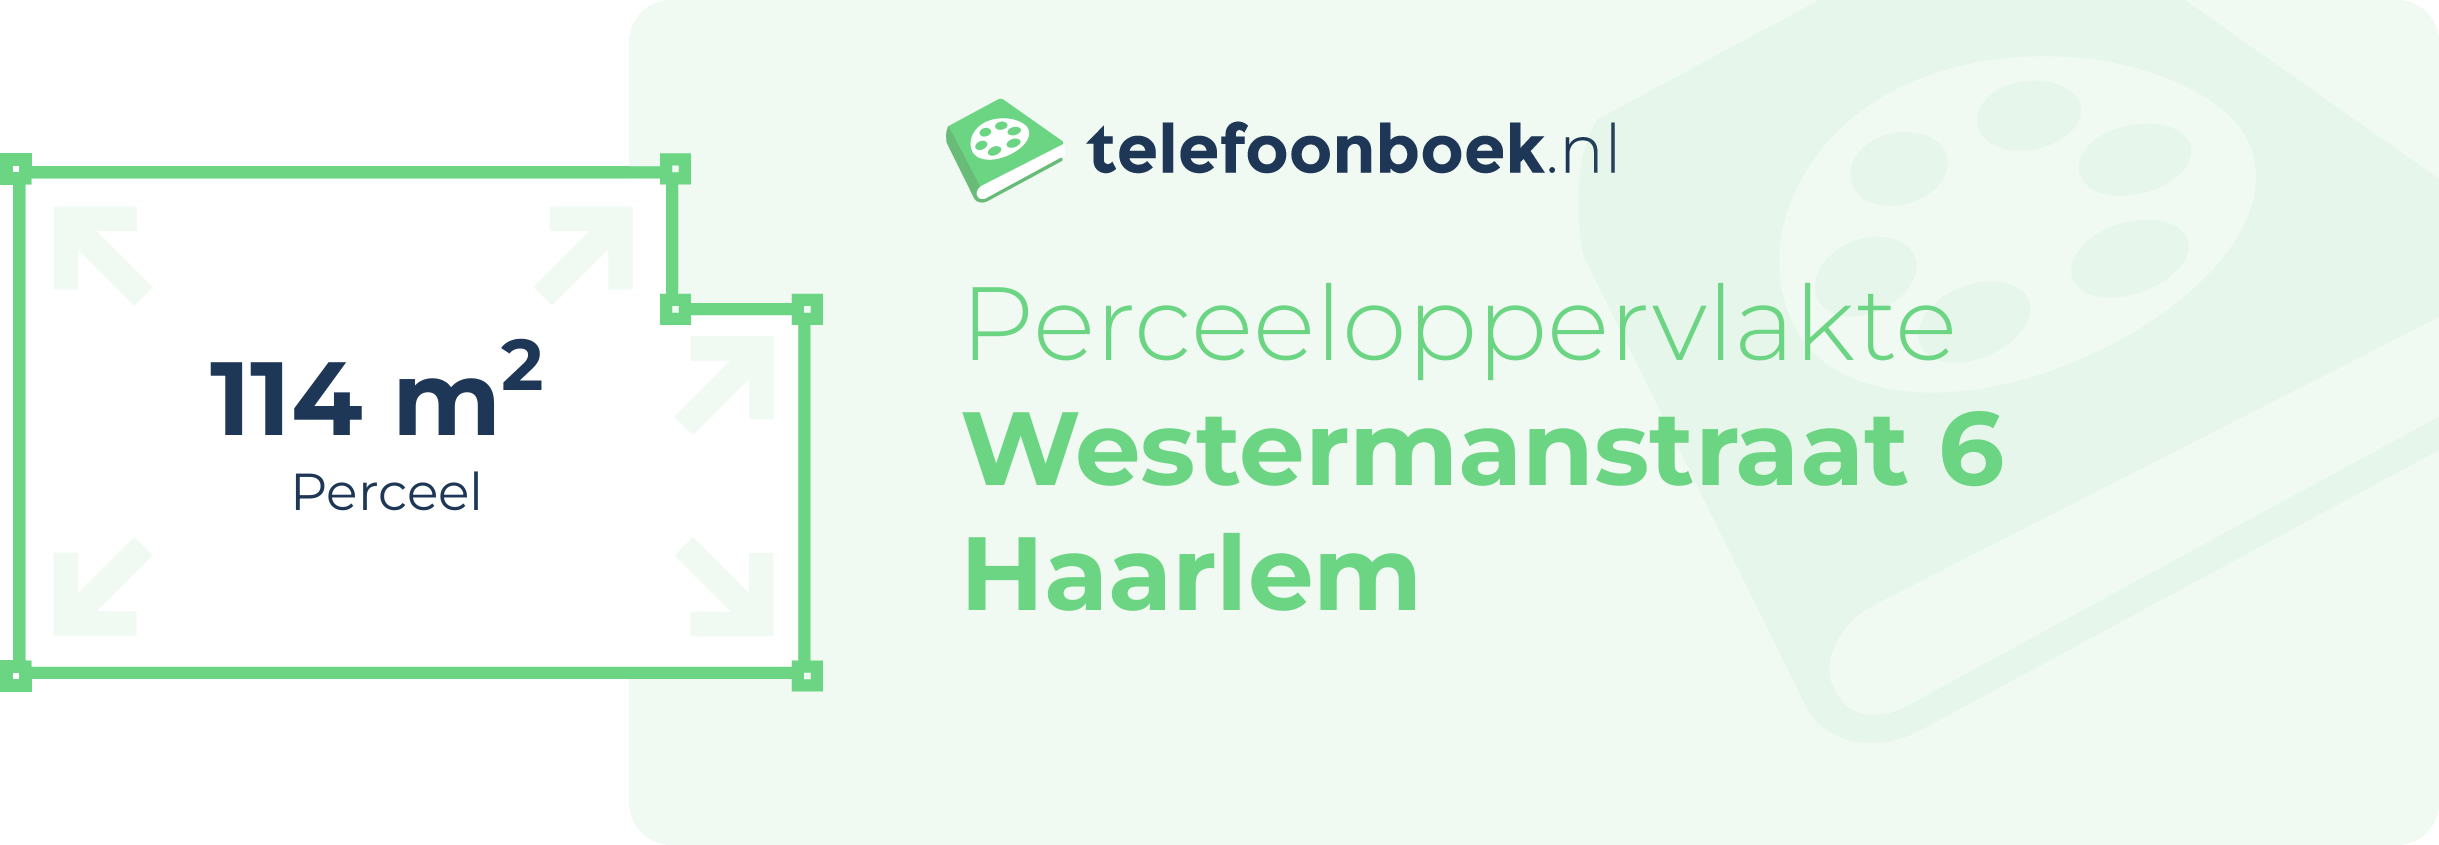 Perceeloppervlakte Westermanstraat 6 Haarlem